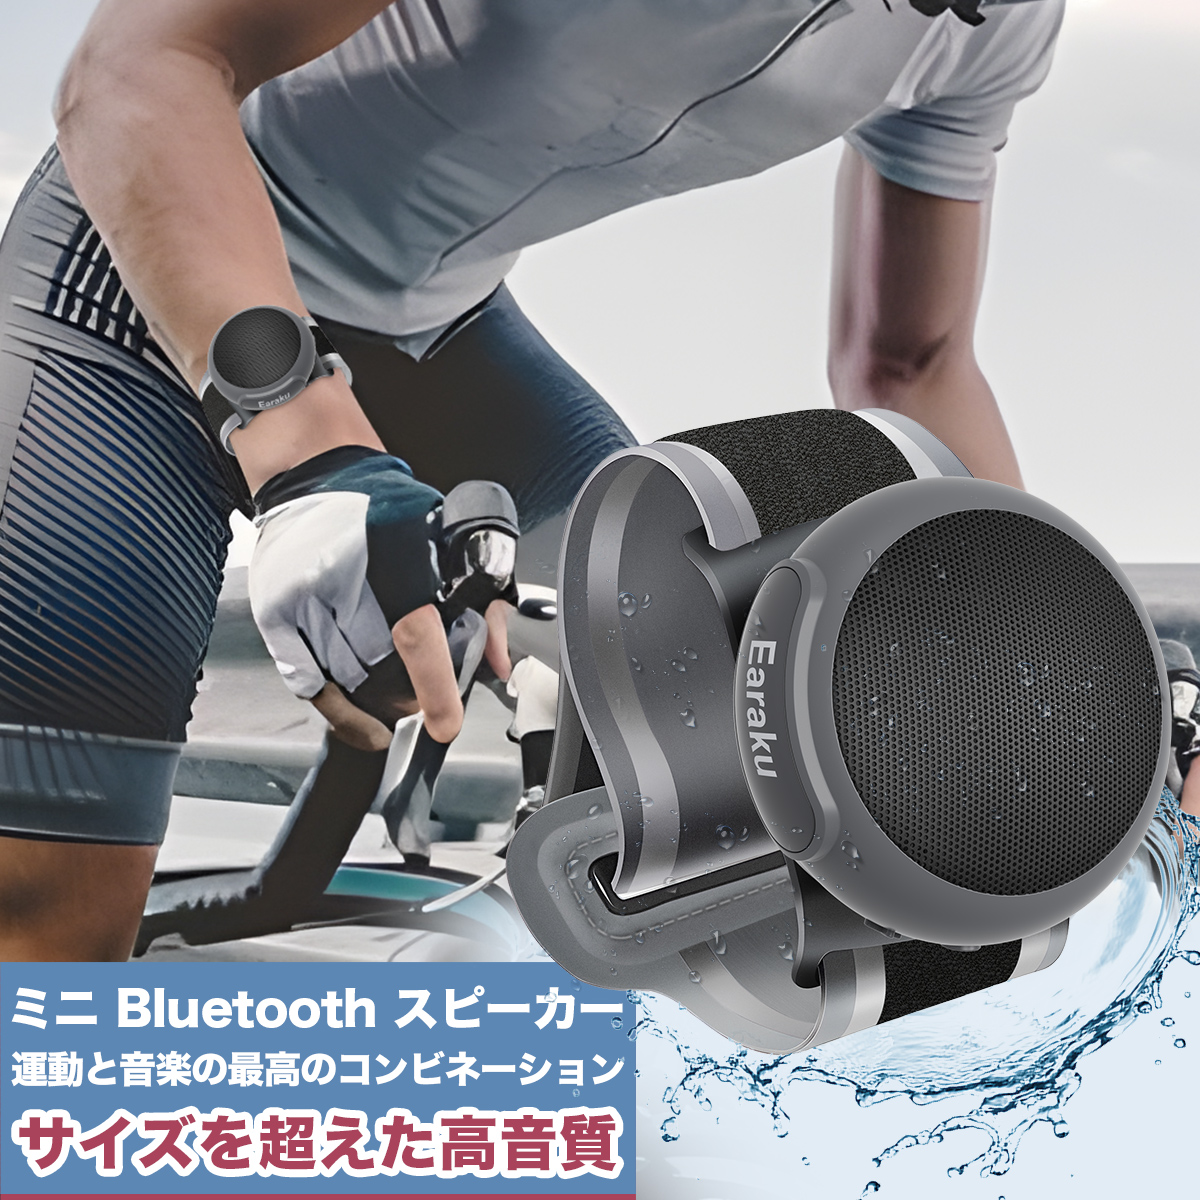 Bluetooth スピーカー 小型 ウェアラブルスピーカー ワイヤレススピーカー ハンズフリー 軽量約60g TWS対応 IPX6防水 送料無料